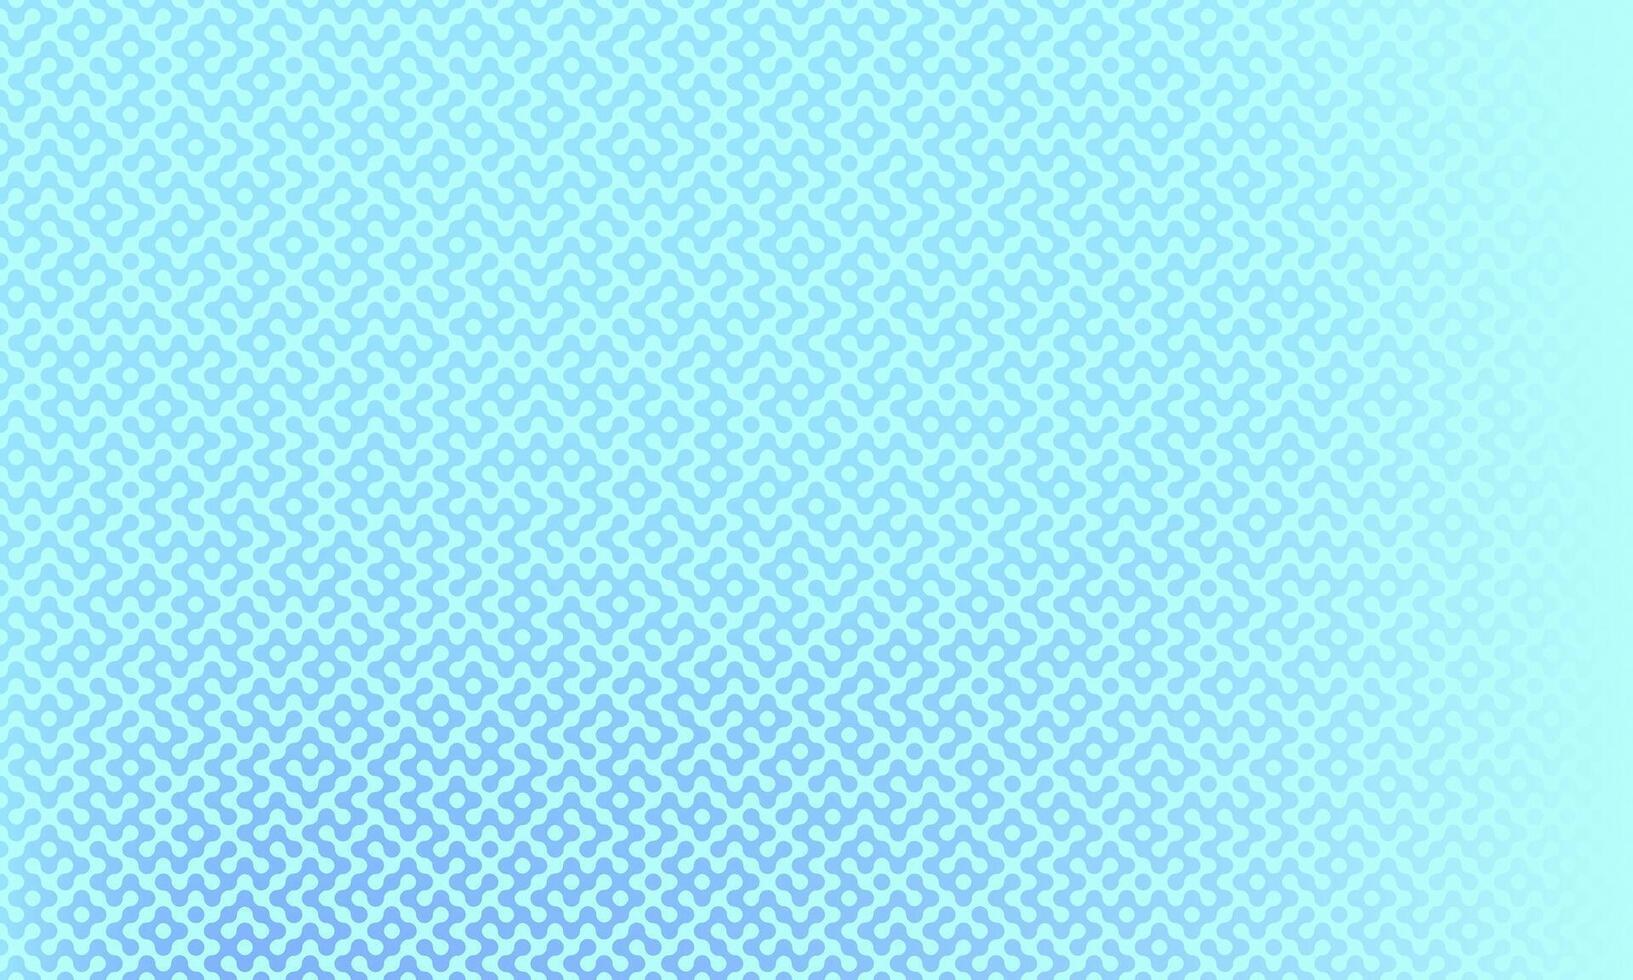 Labirinto azul gradiente abstrato papel de parede textura vetor